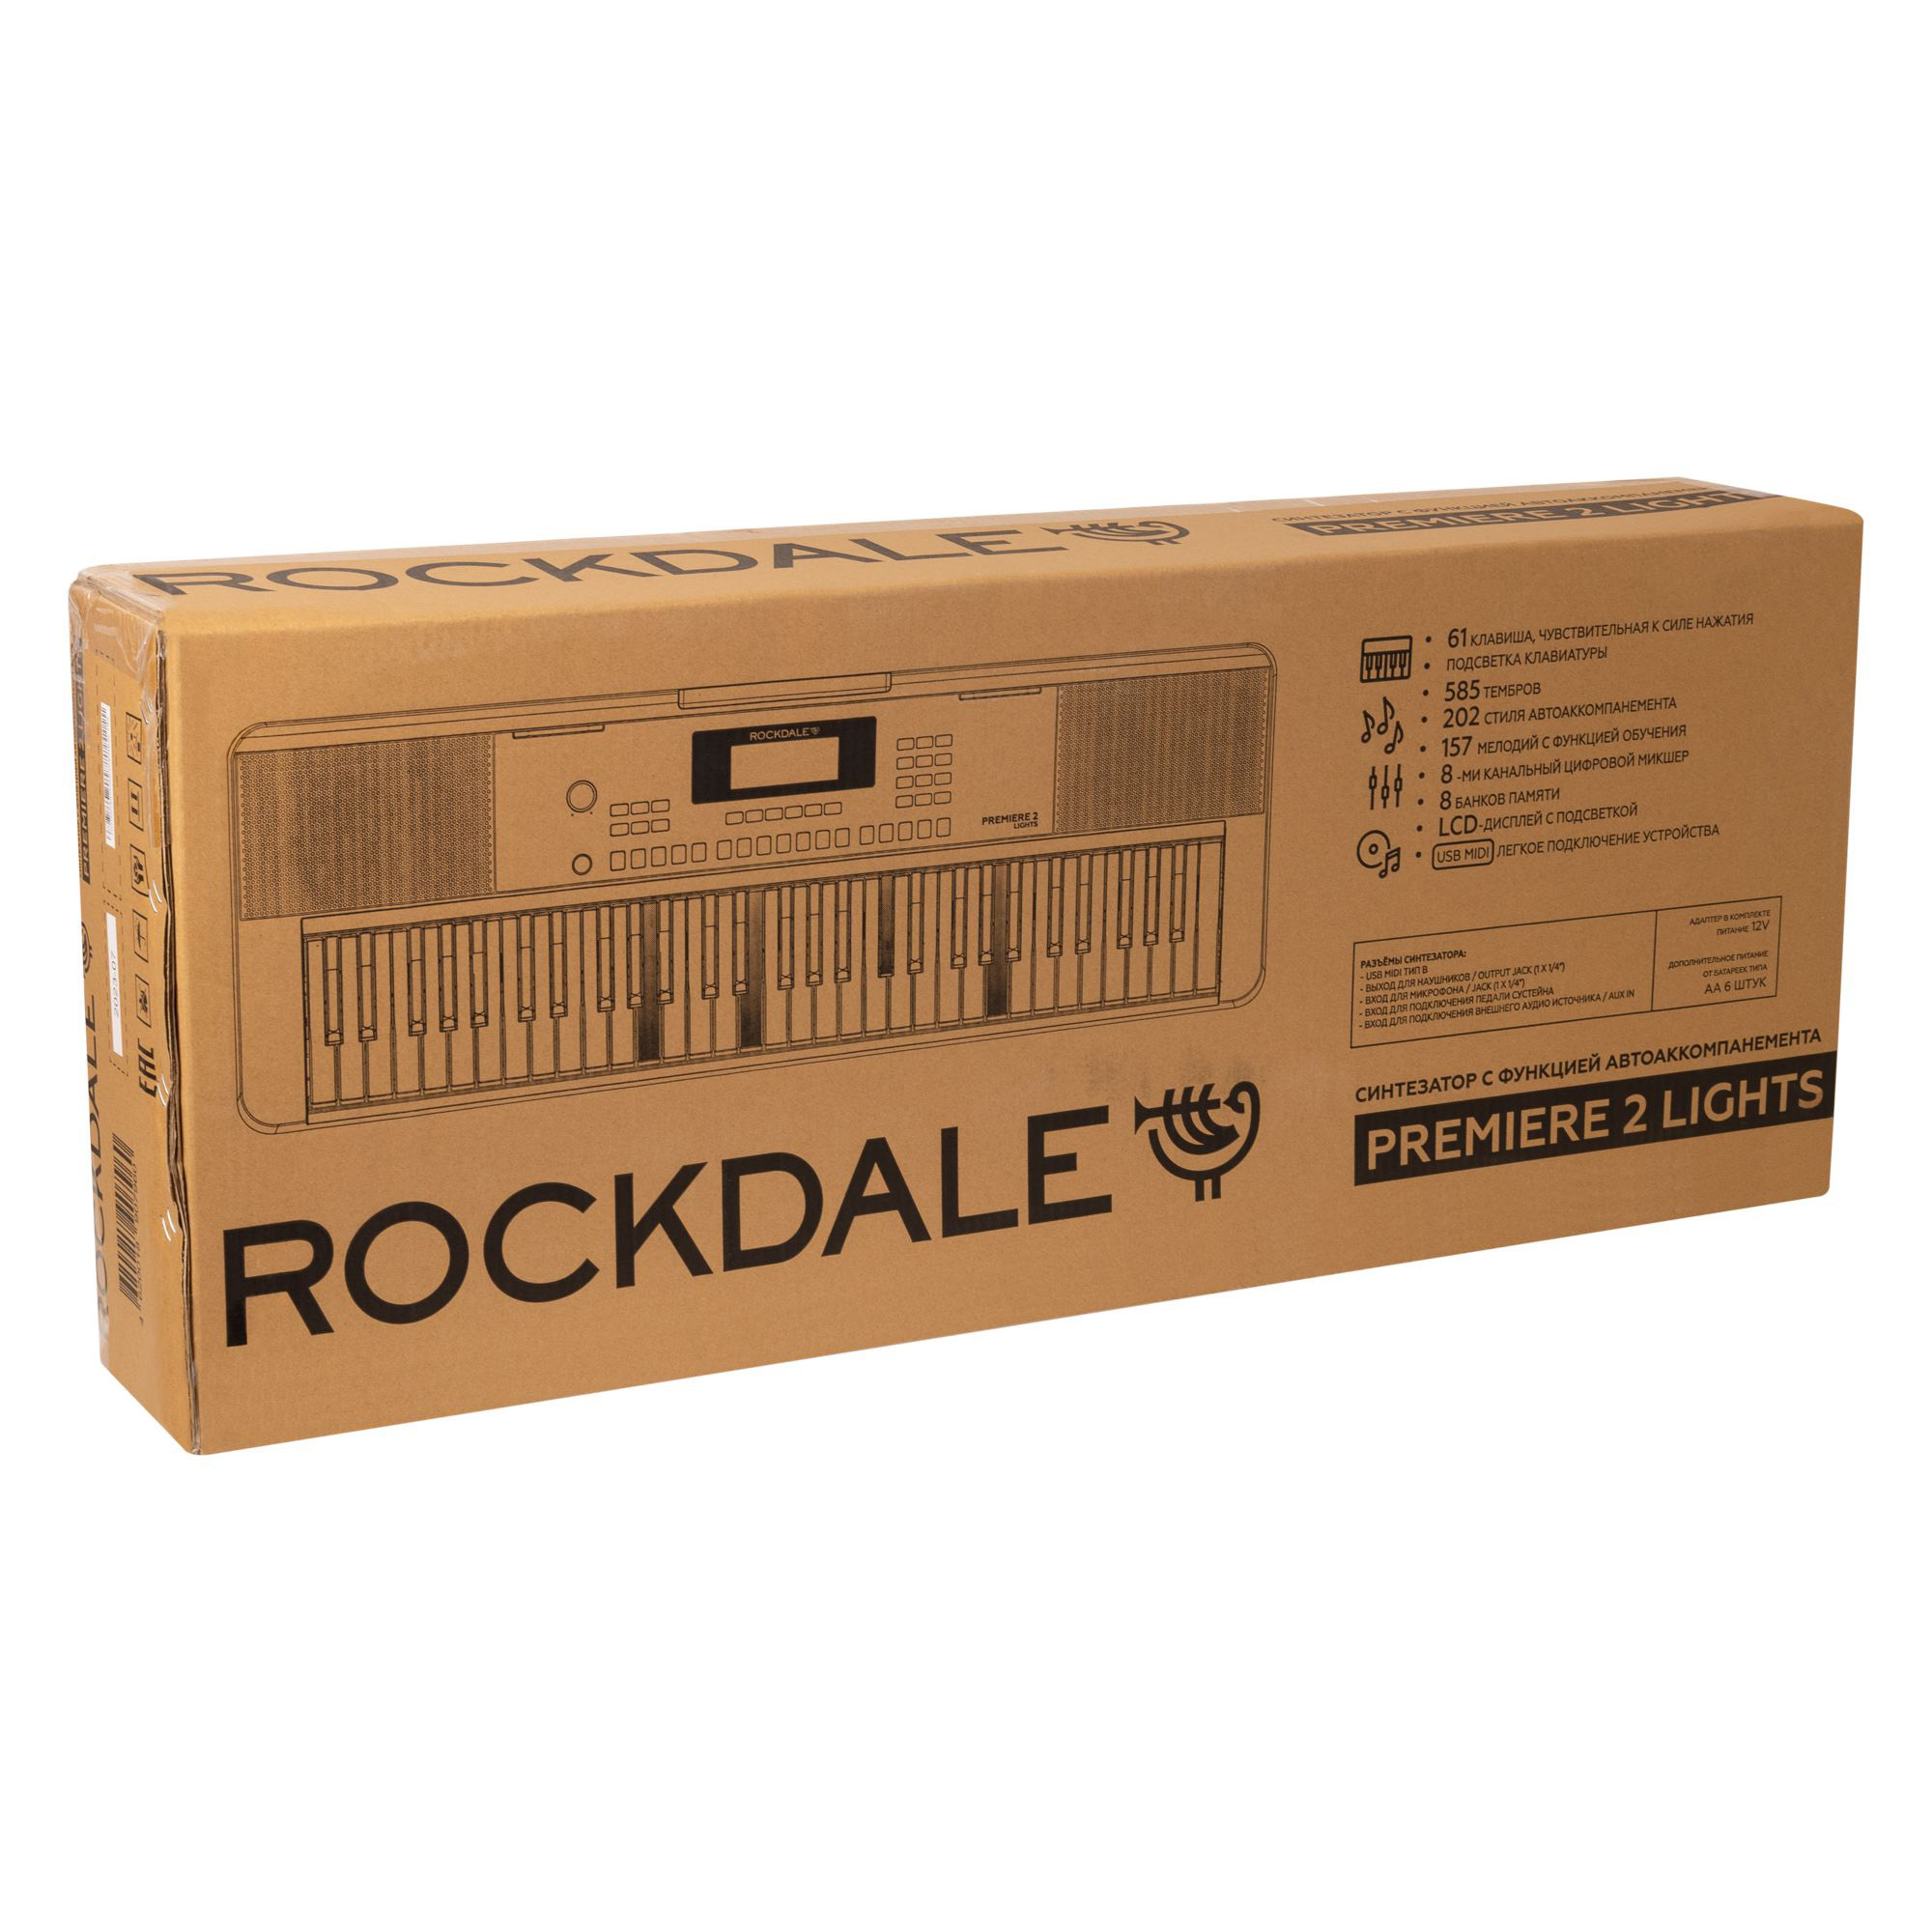 Rockdale Premiere 2 Lights Eurorack модули